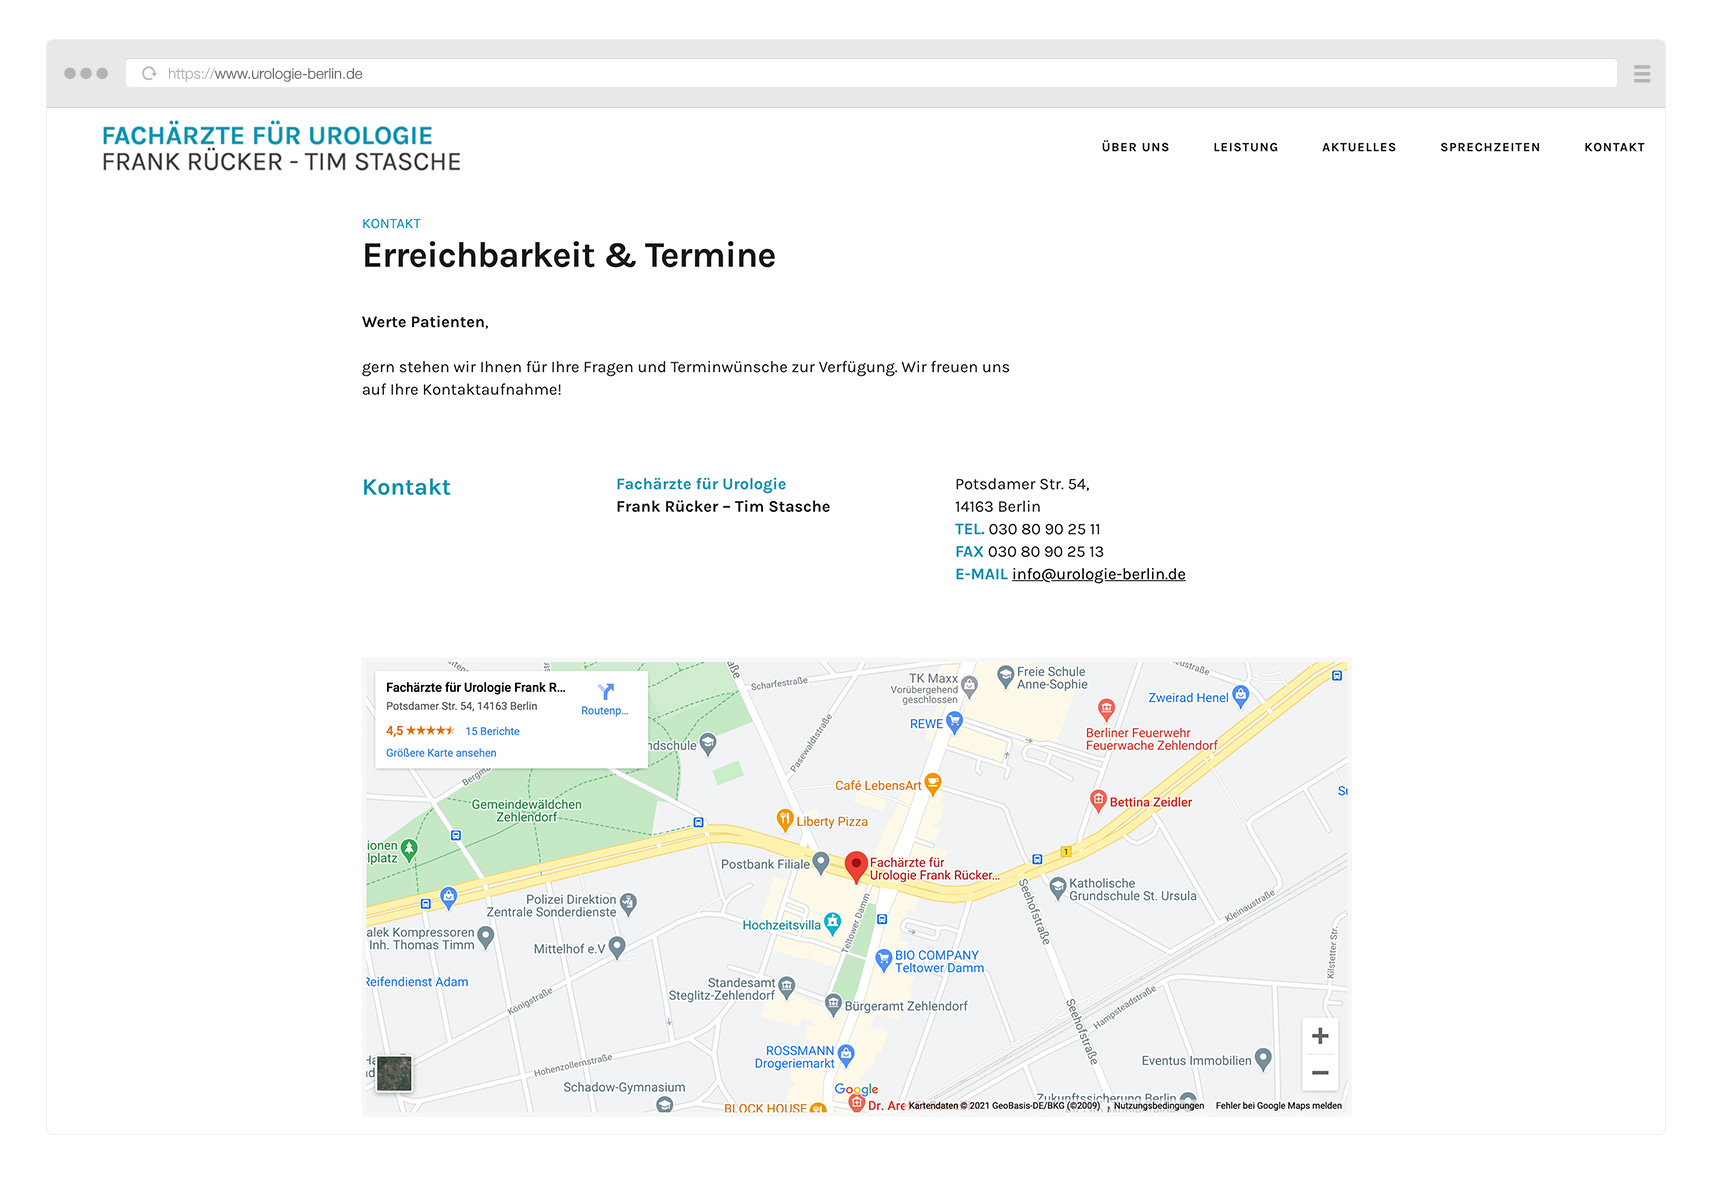 Urologie-Berlin_Frank_Rücker_Website_Standort